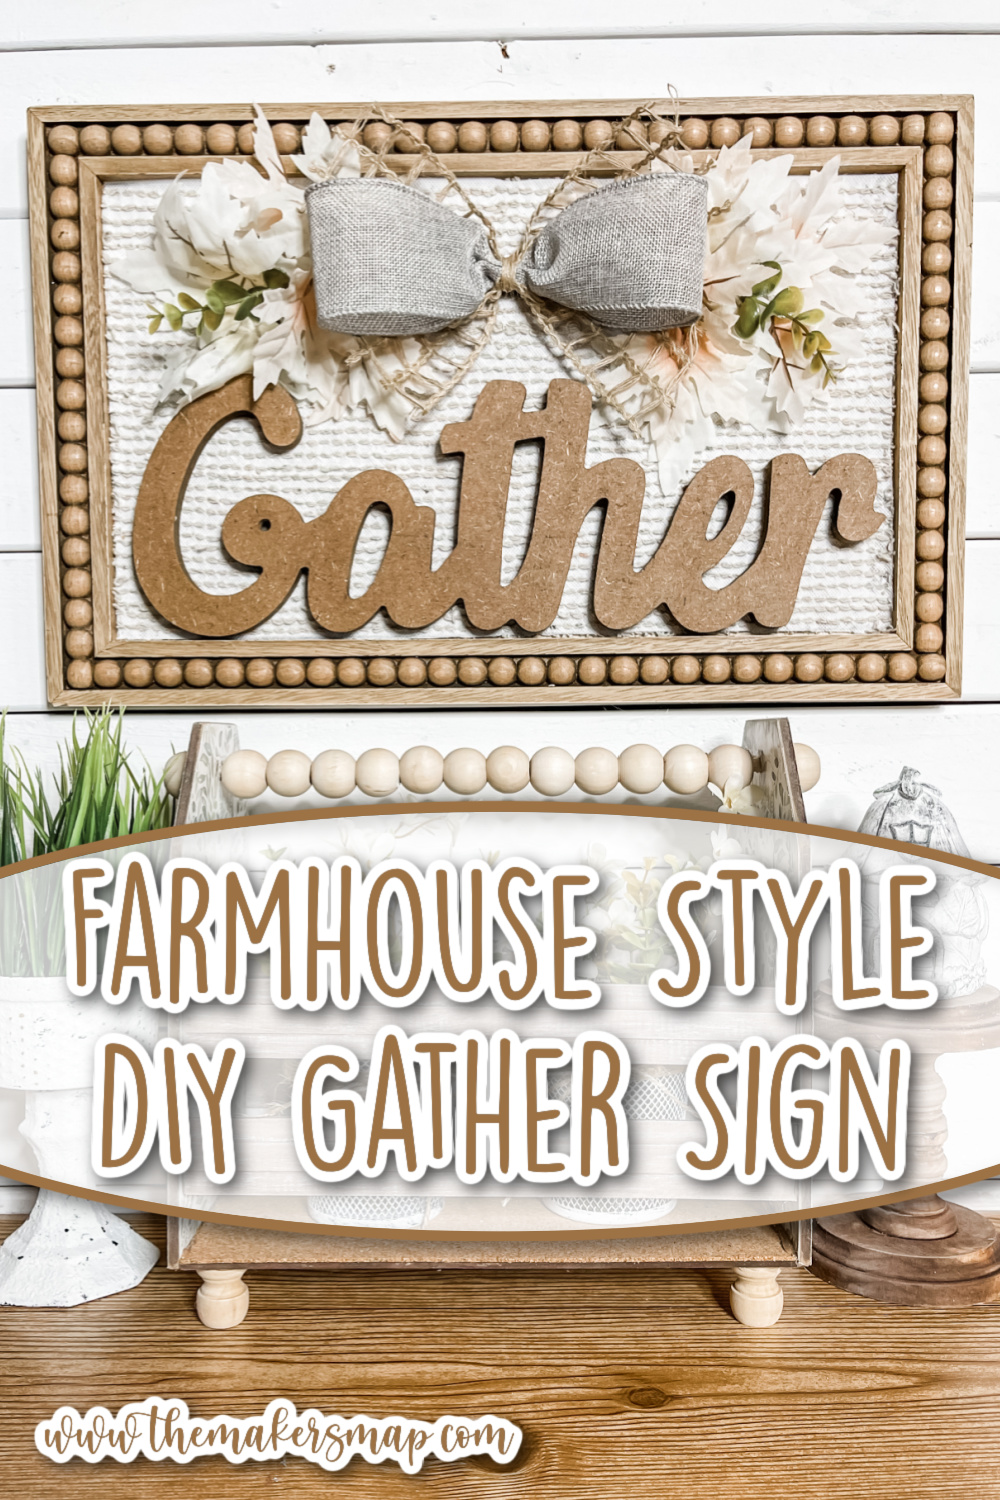 Farmhouse Style DIY Gather Sign